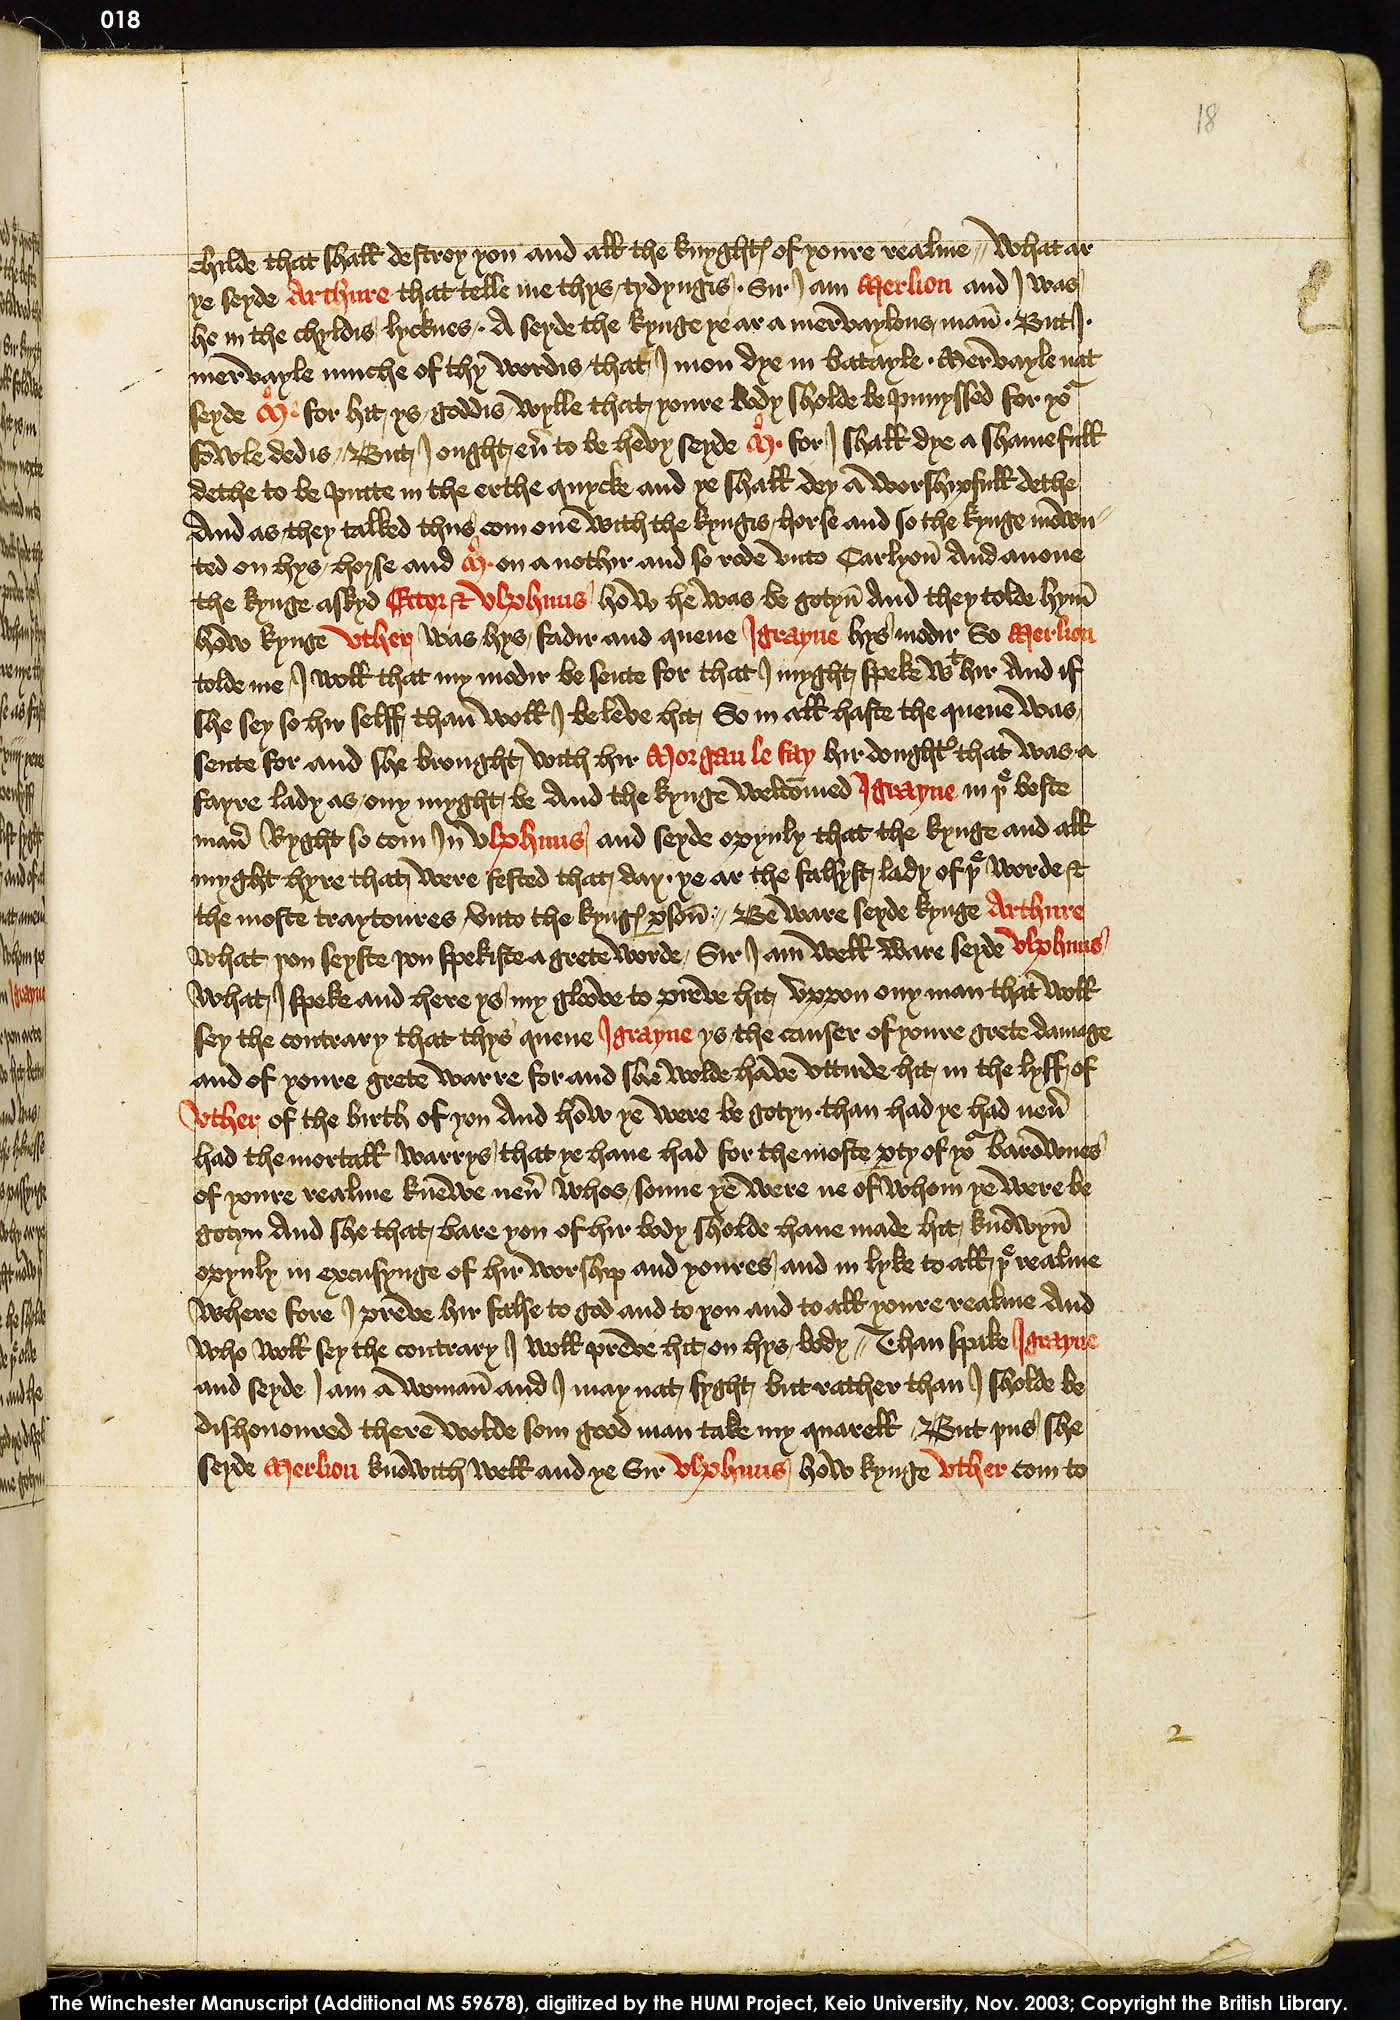 Folio 18r